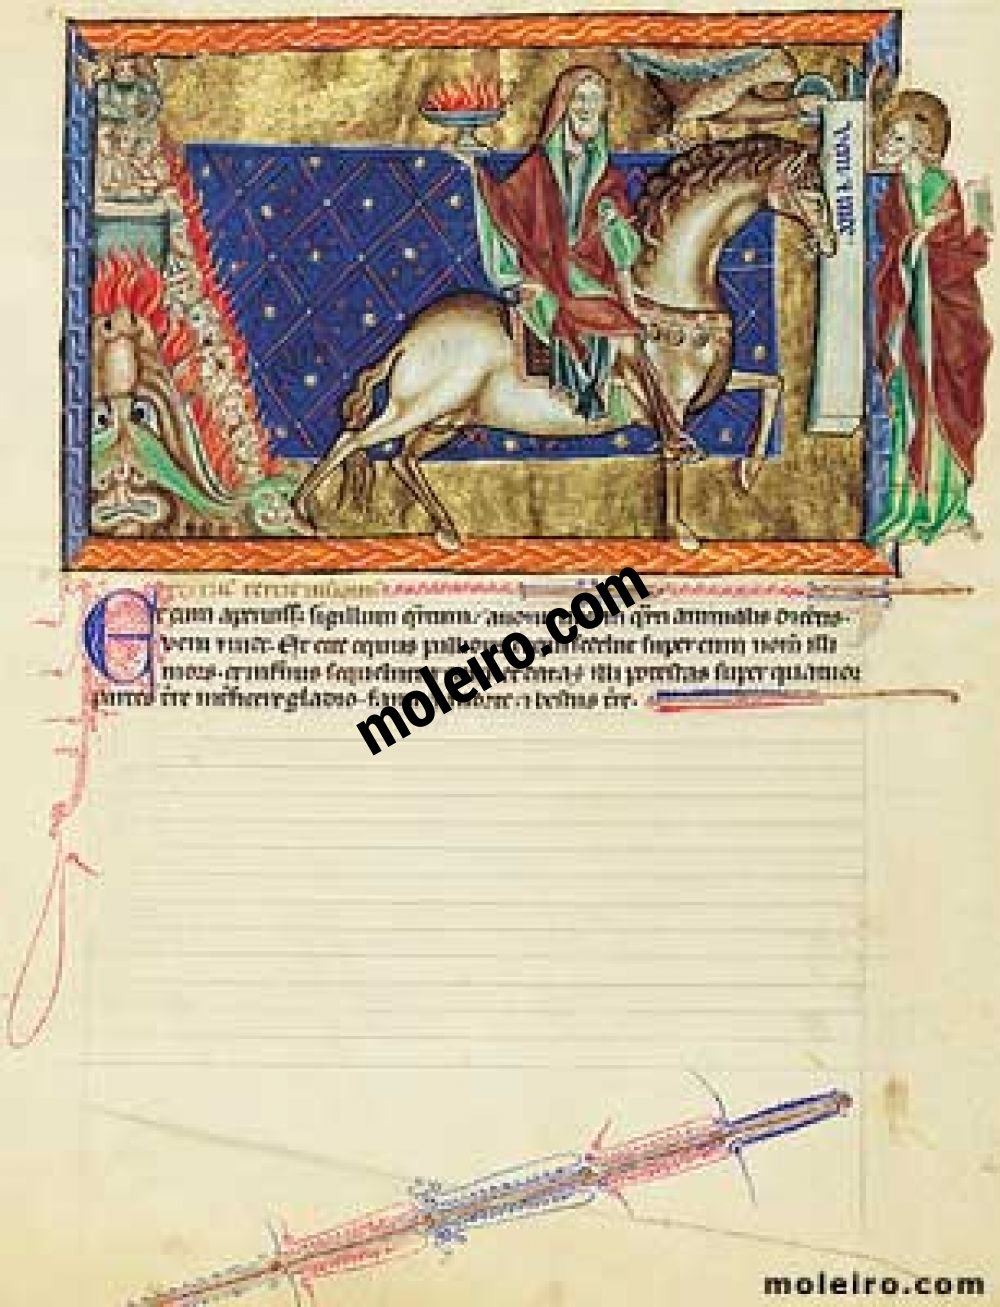 Apocalypse Gulbenkian f. 10v, Le quatrième sceau: le chevalier sur le cheval de couleur pâle